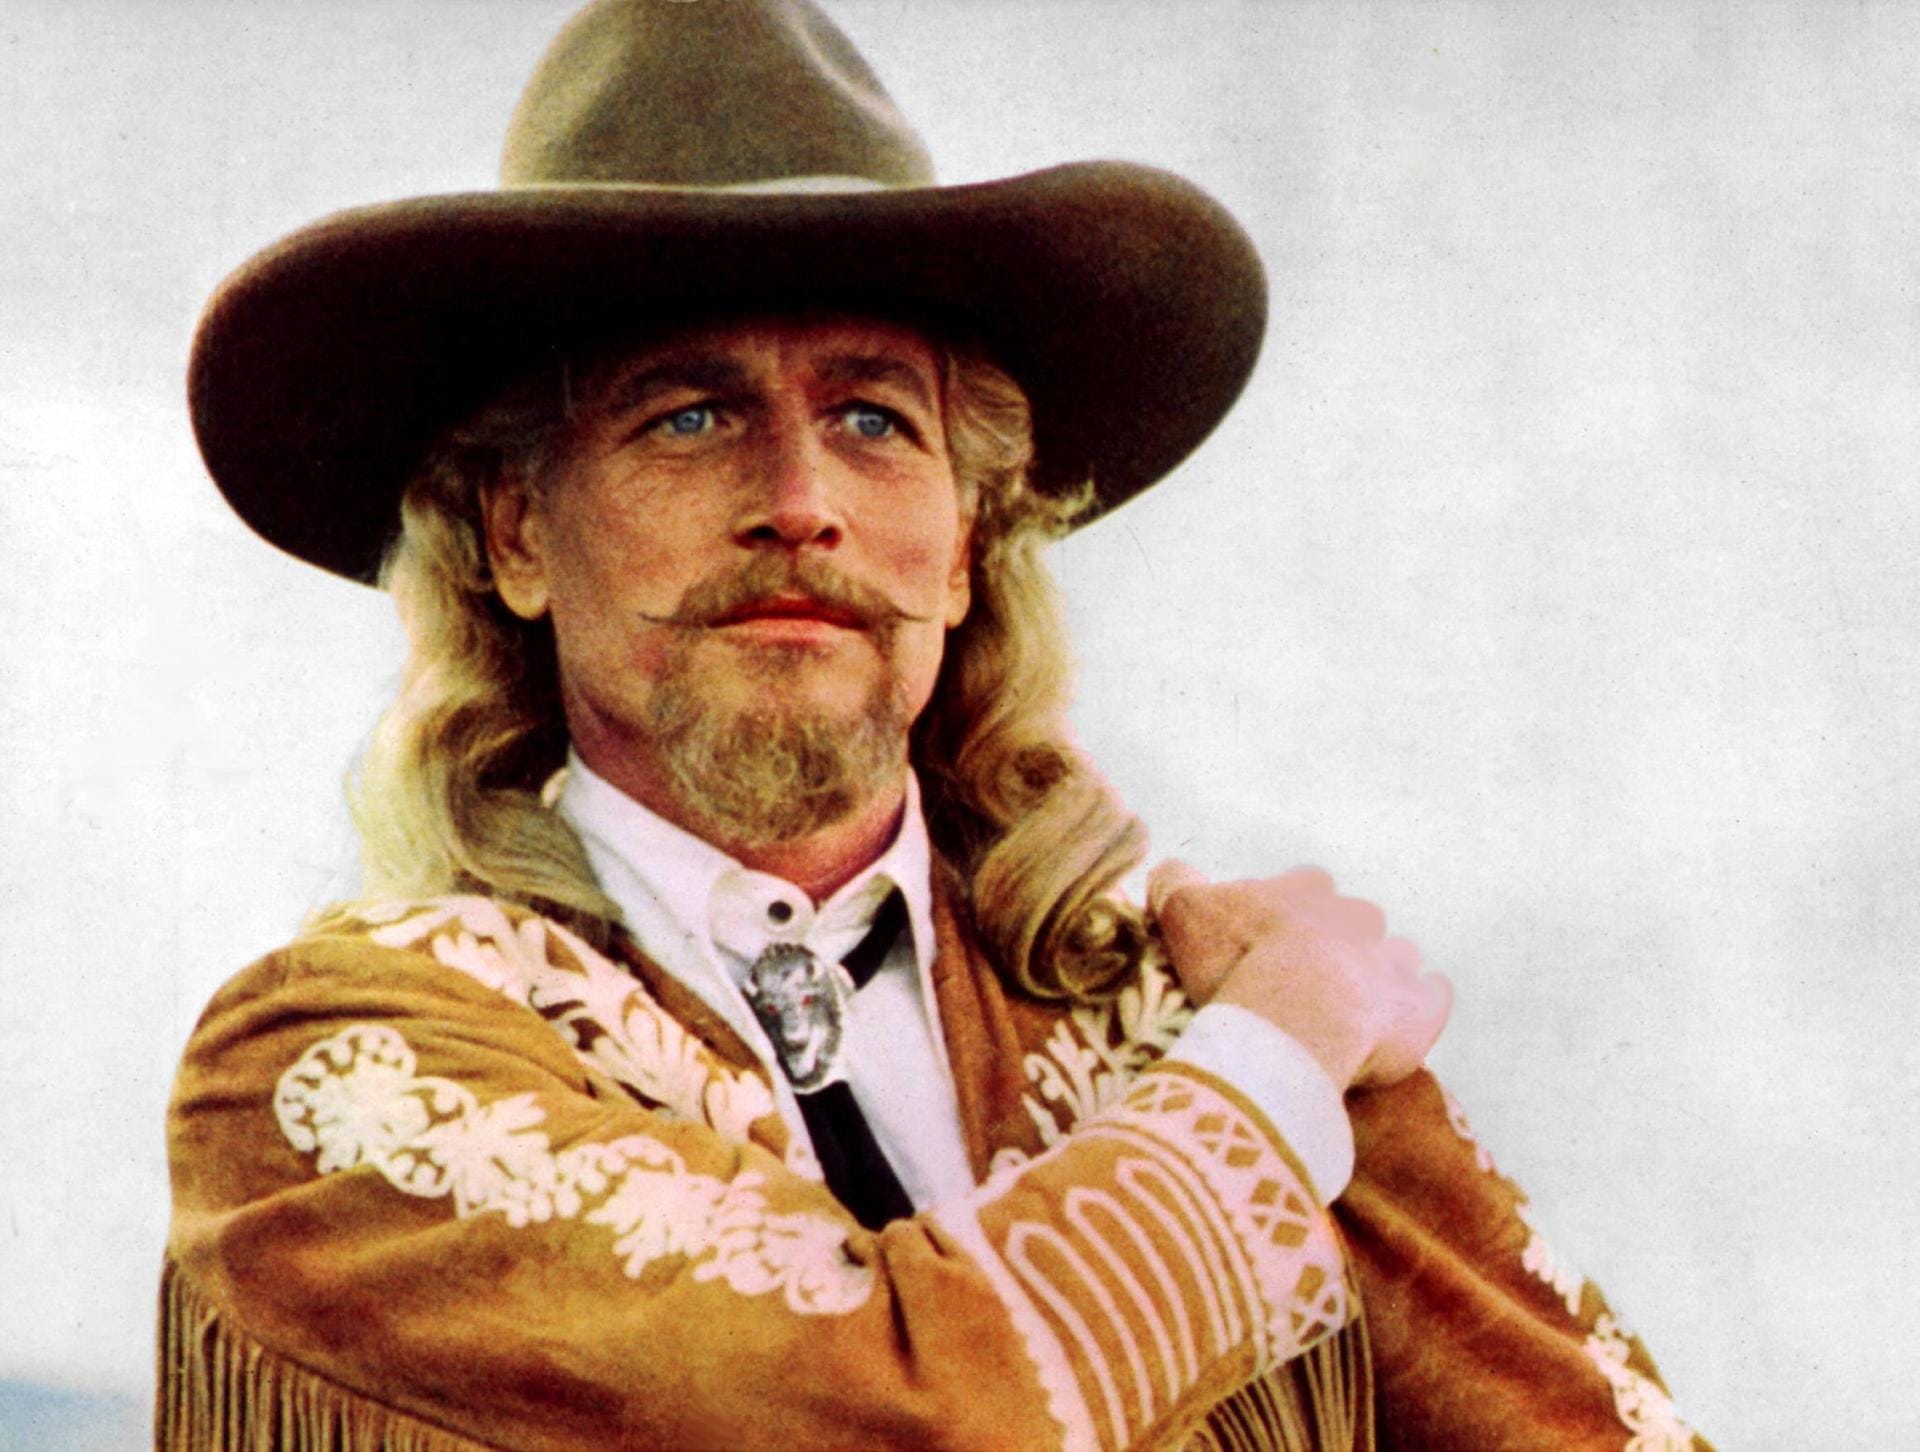 Filme, Romane und TV-Serien wie "Bonanza" griffen Cody als Figur auf. Hier zu sehen ist der Schauspieler Paul Newman in der Rolle des Buffalo Bill.